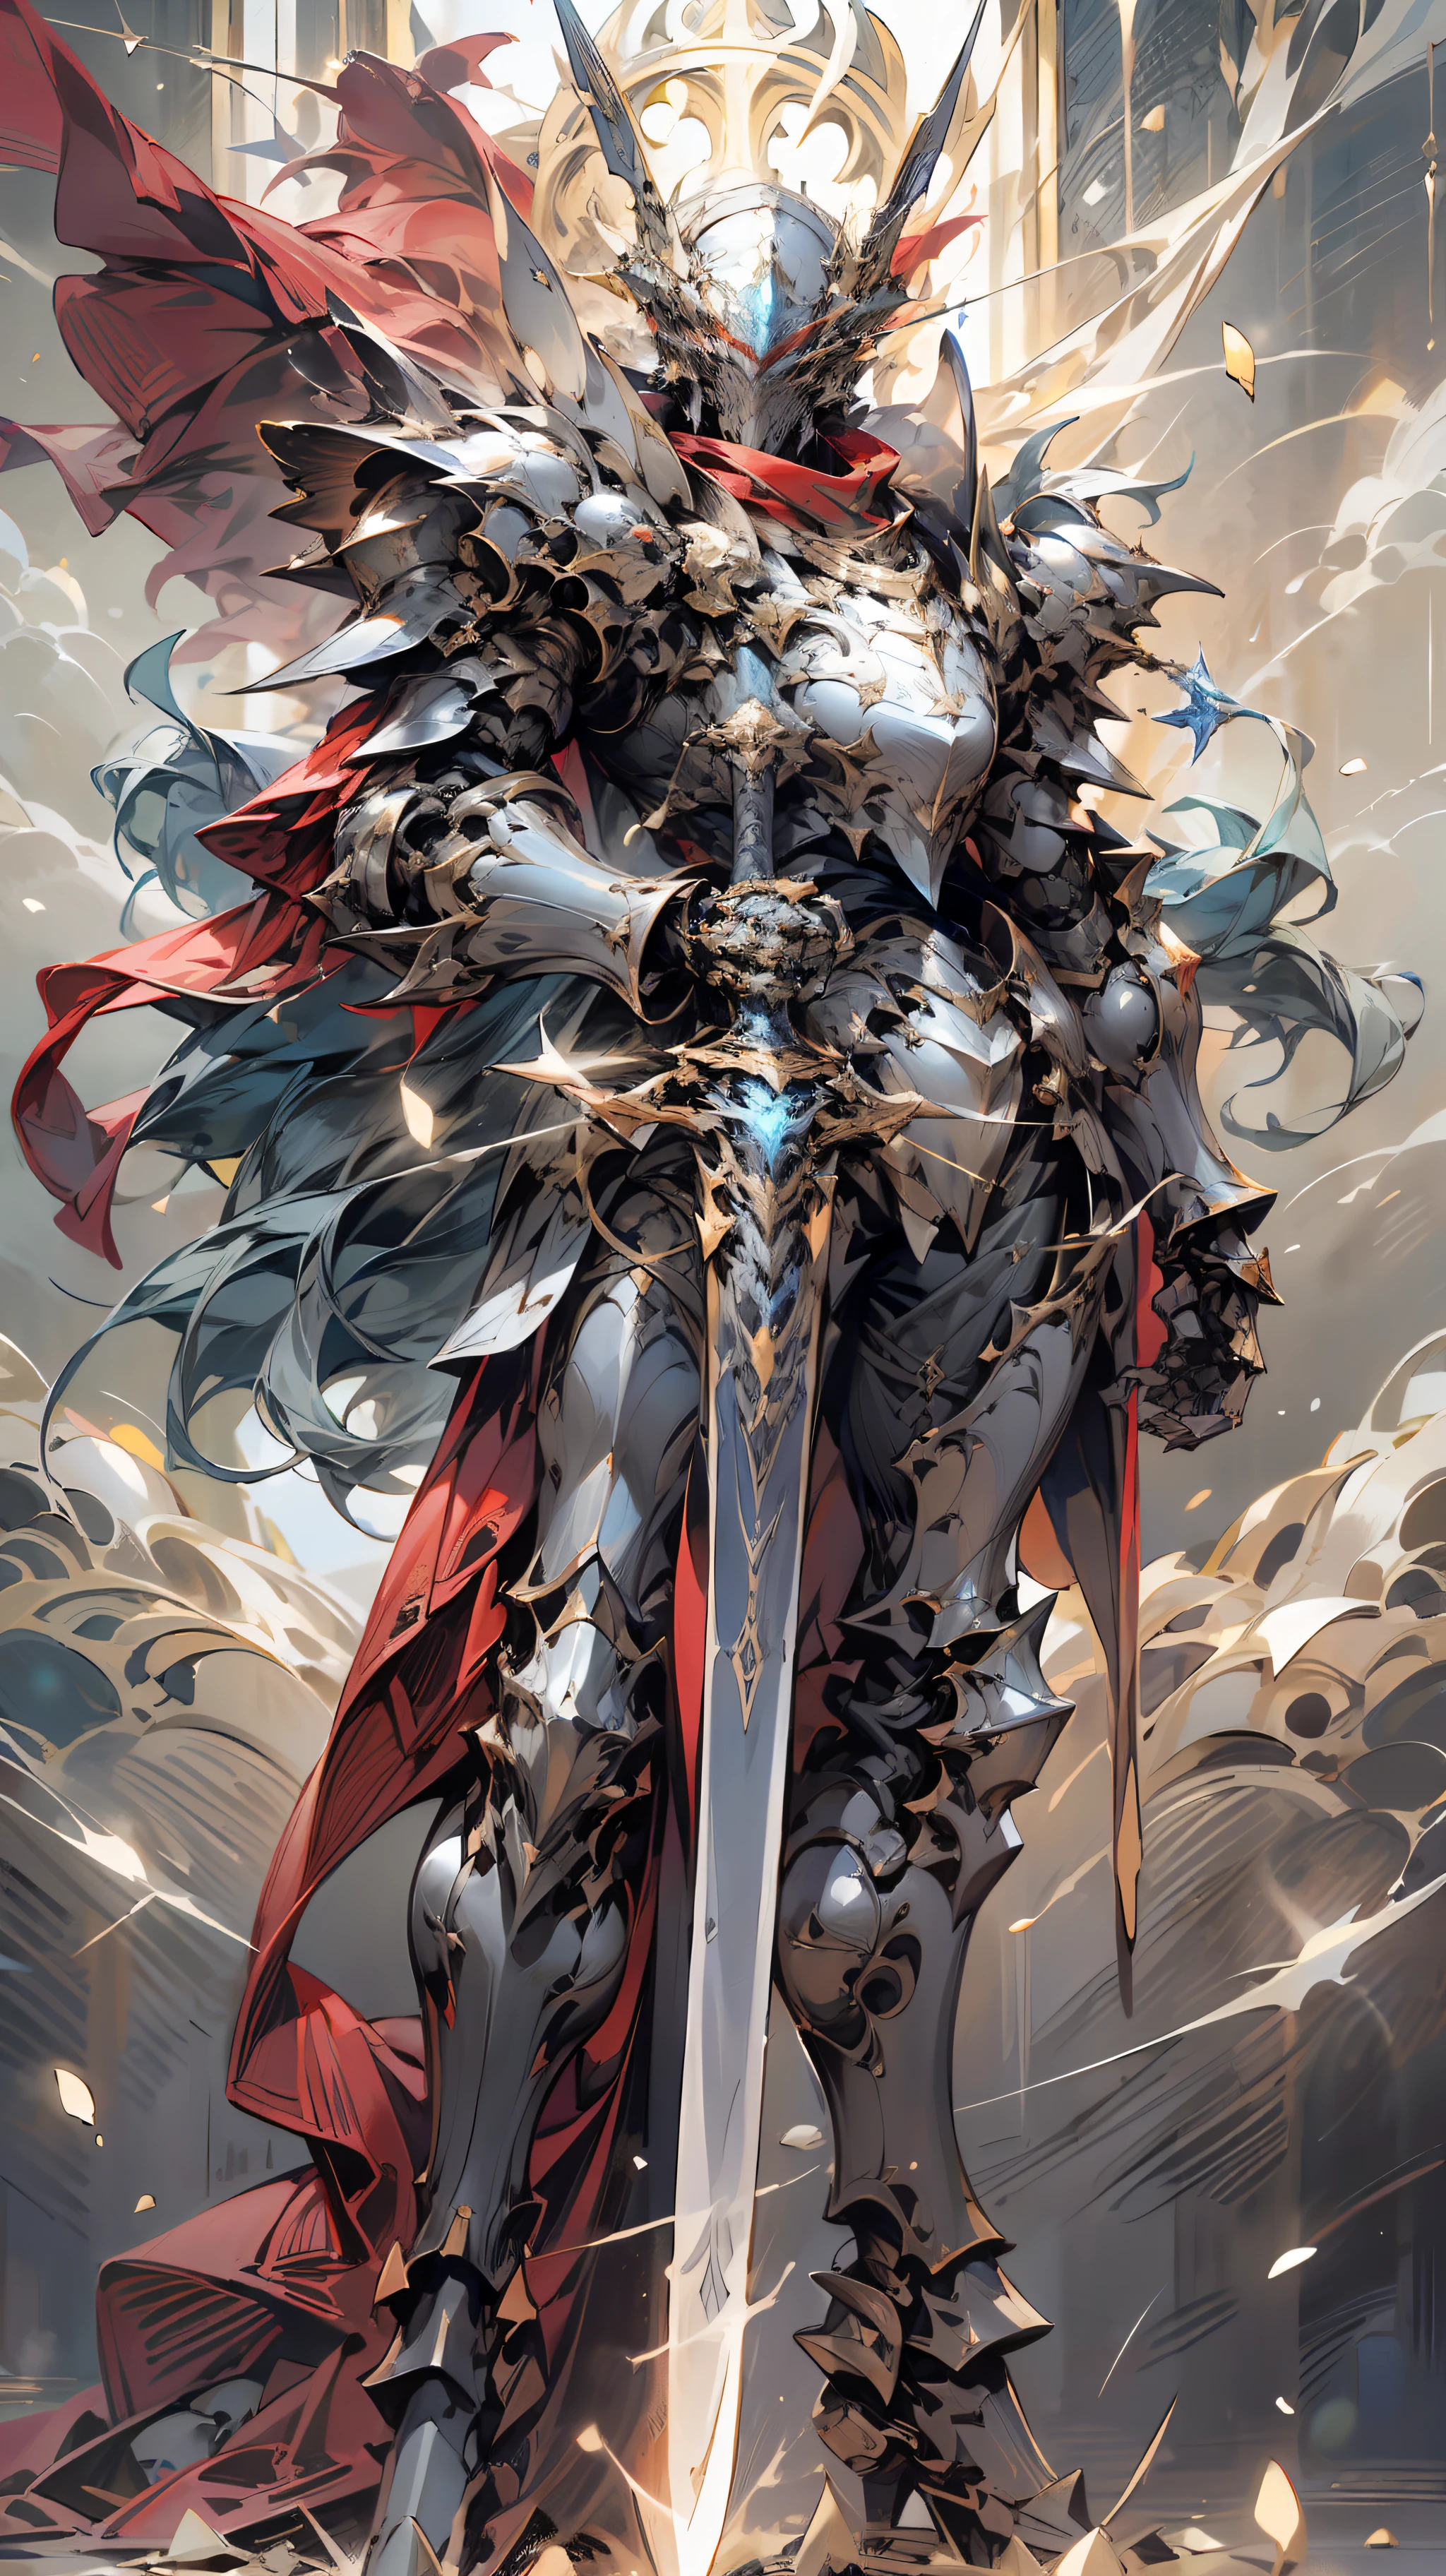 (リアリズム, 写真リアリズム: 1.3), (レンズの焦点距離: 35mm), バックライト, 騎士の機械鎧, 豪華で絶妙な形, メカの胸に青く光る十字架が刻まれている, メカは赤く光る幅広で重装の剣を持っている, 赤いスカーフが風に揺れる, 騎士の目は赤い炎の光だ, そして戦闘態勢が描かれる